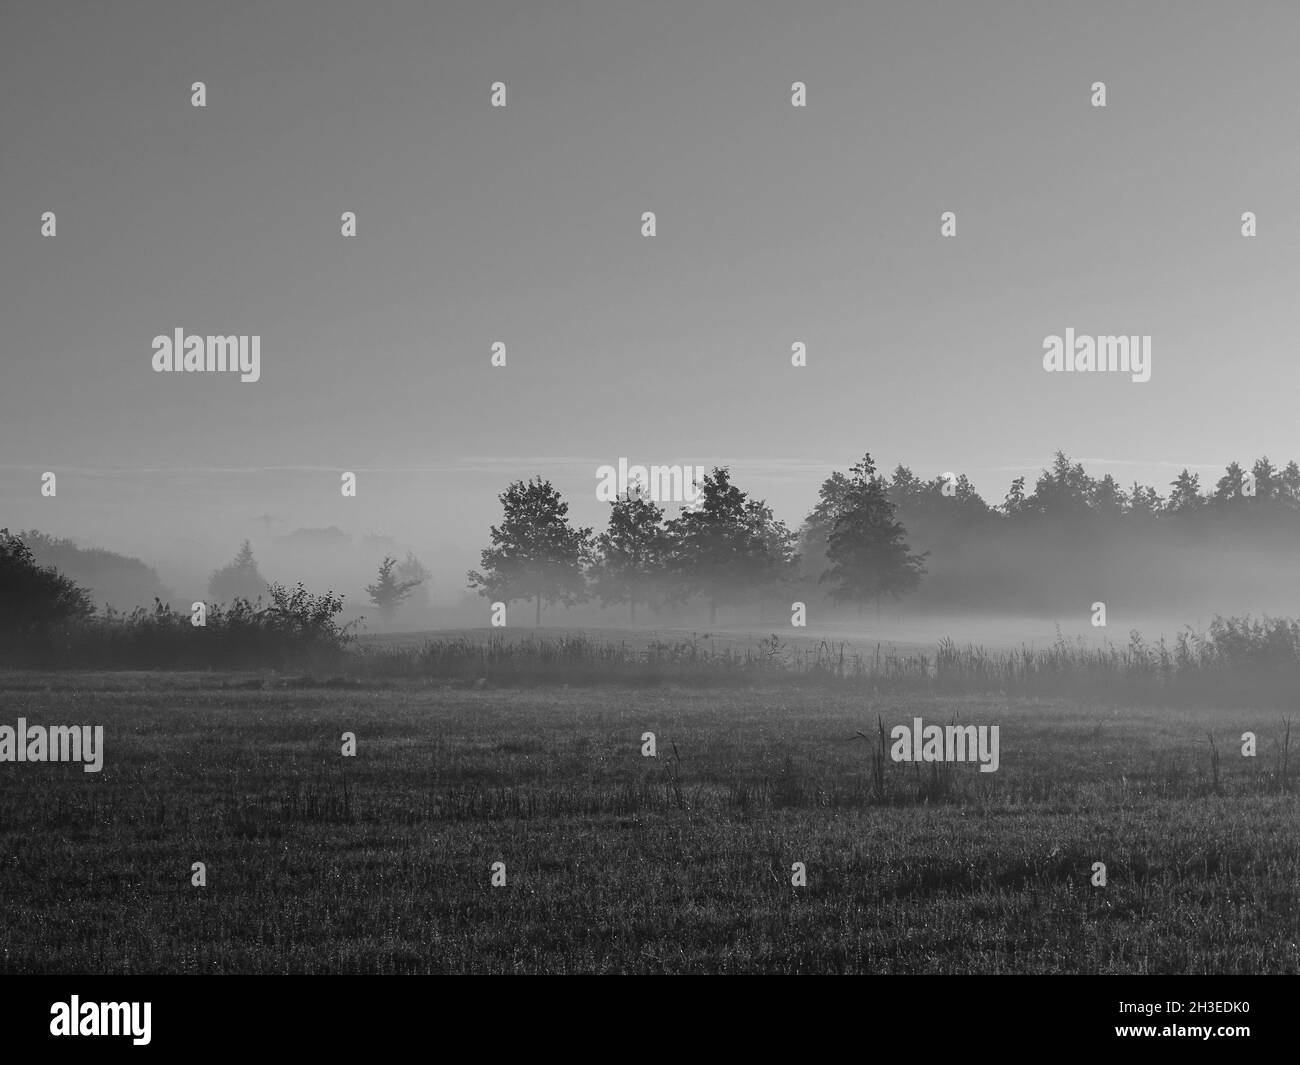 fotografia in bianco e nero di una mattinata di nebbia, con le sagome di quattro alberi al centro e macchie di nebbia sui prati Foto Stock